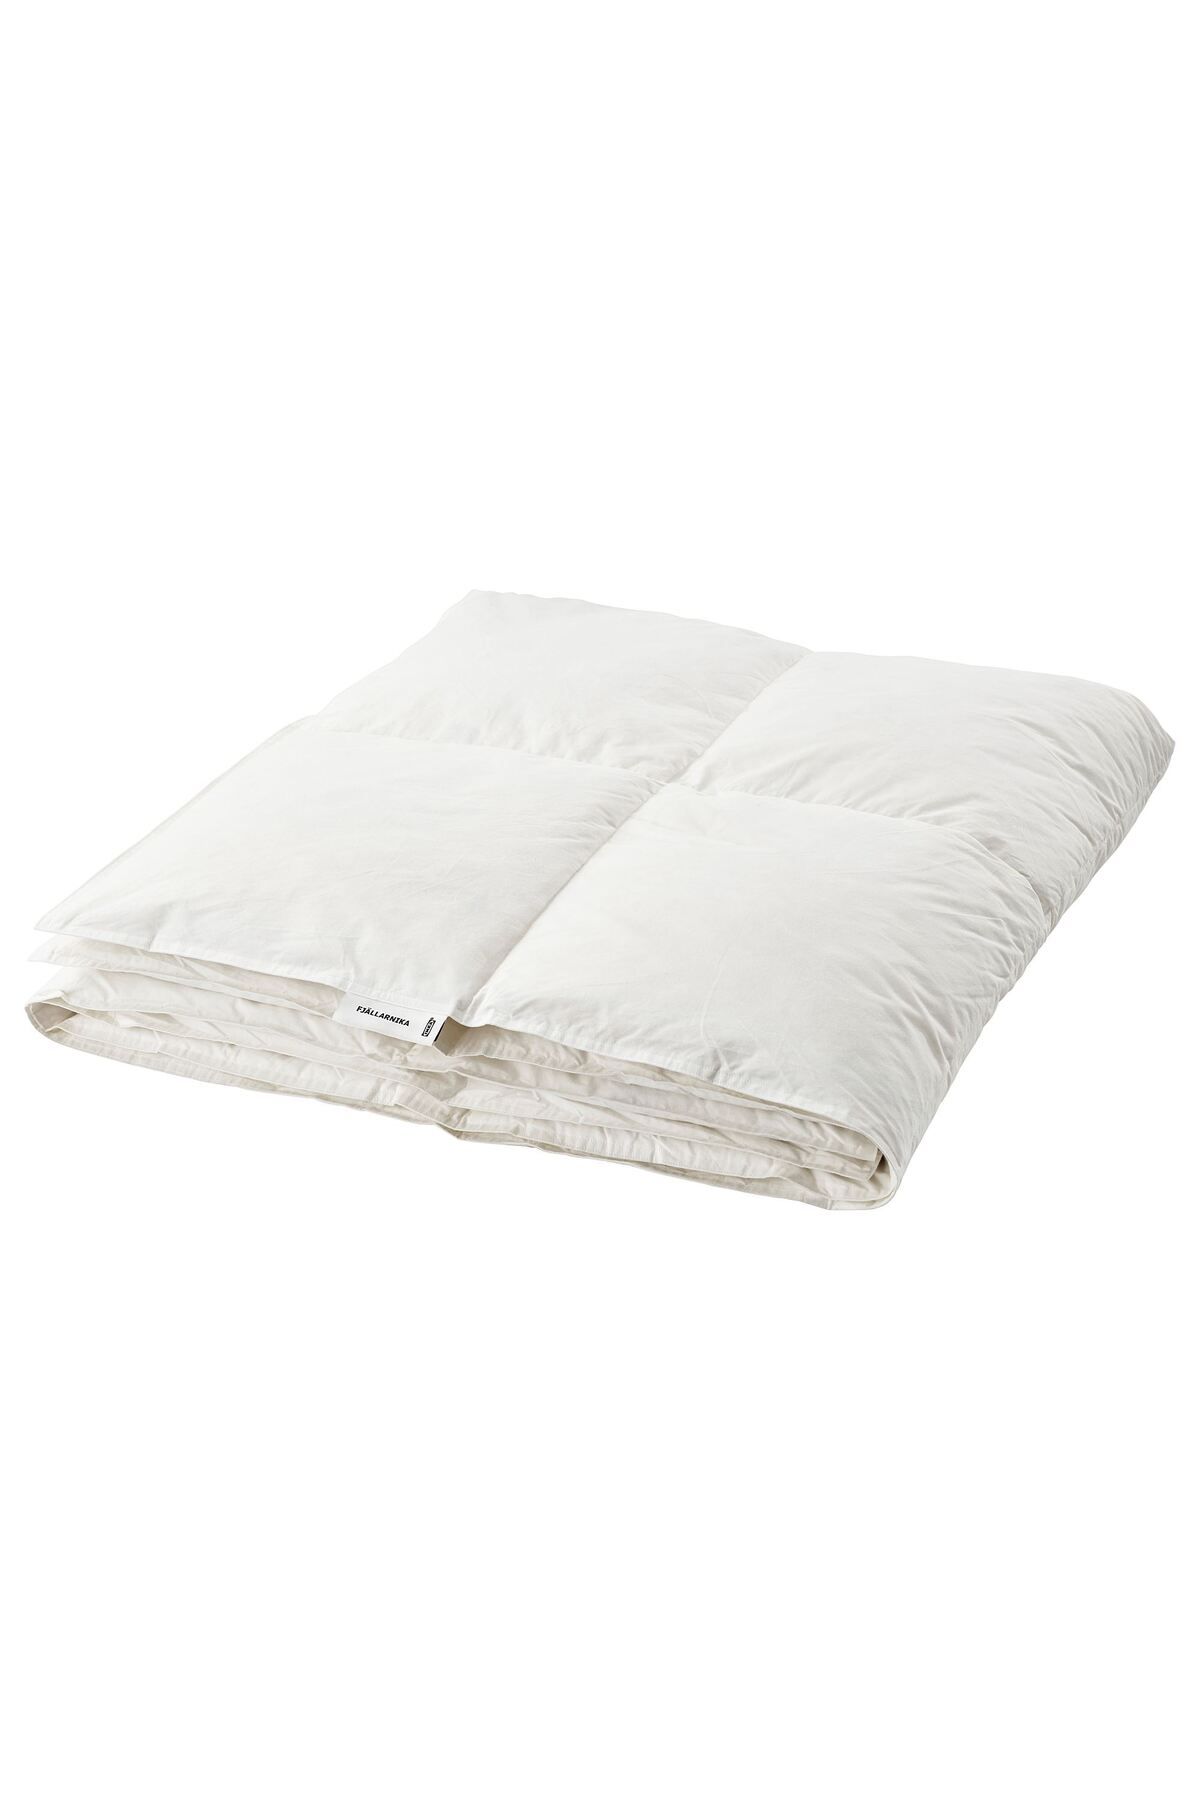 IKEA kuş tüyü yorgan, tek kişilik yorgan, beyaz, 150x200 cm, sıcak tutar